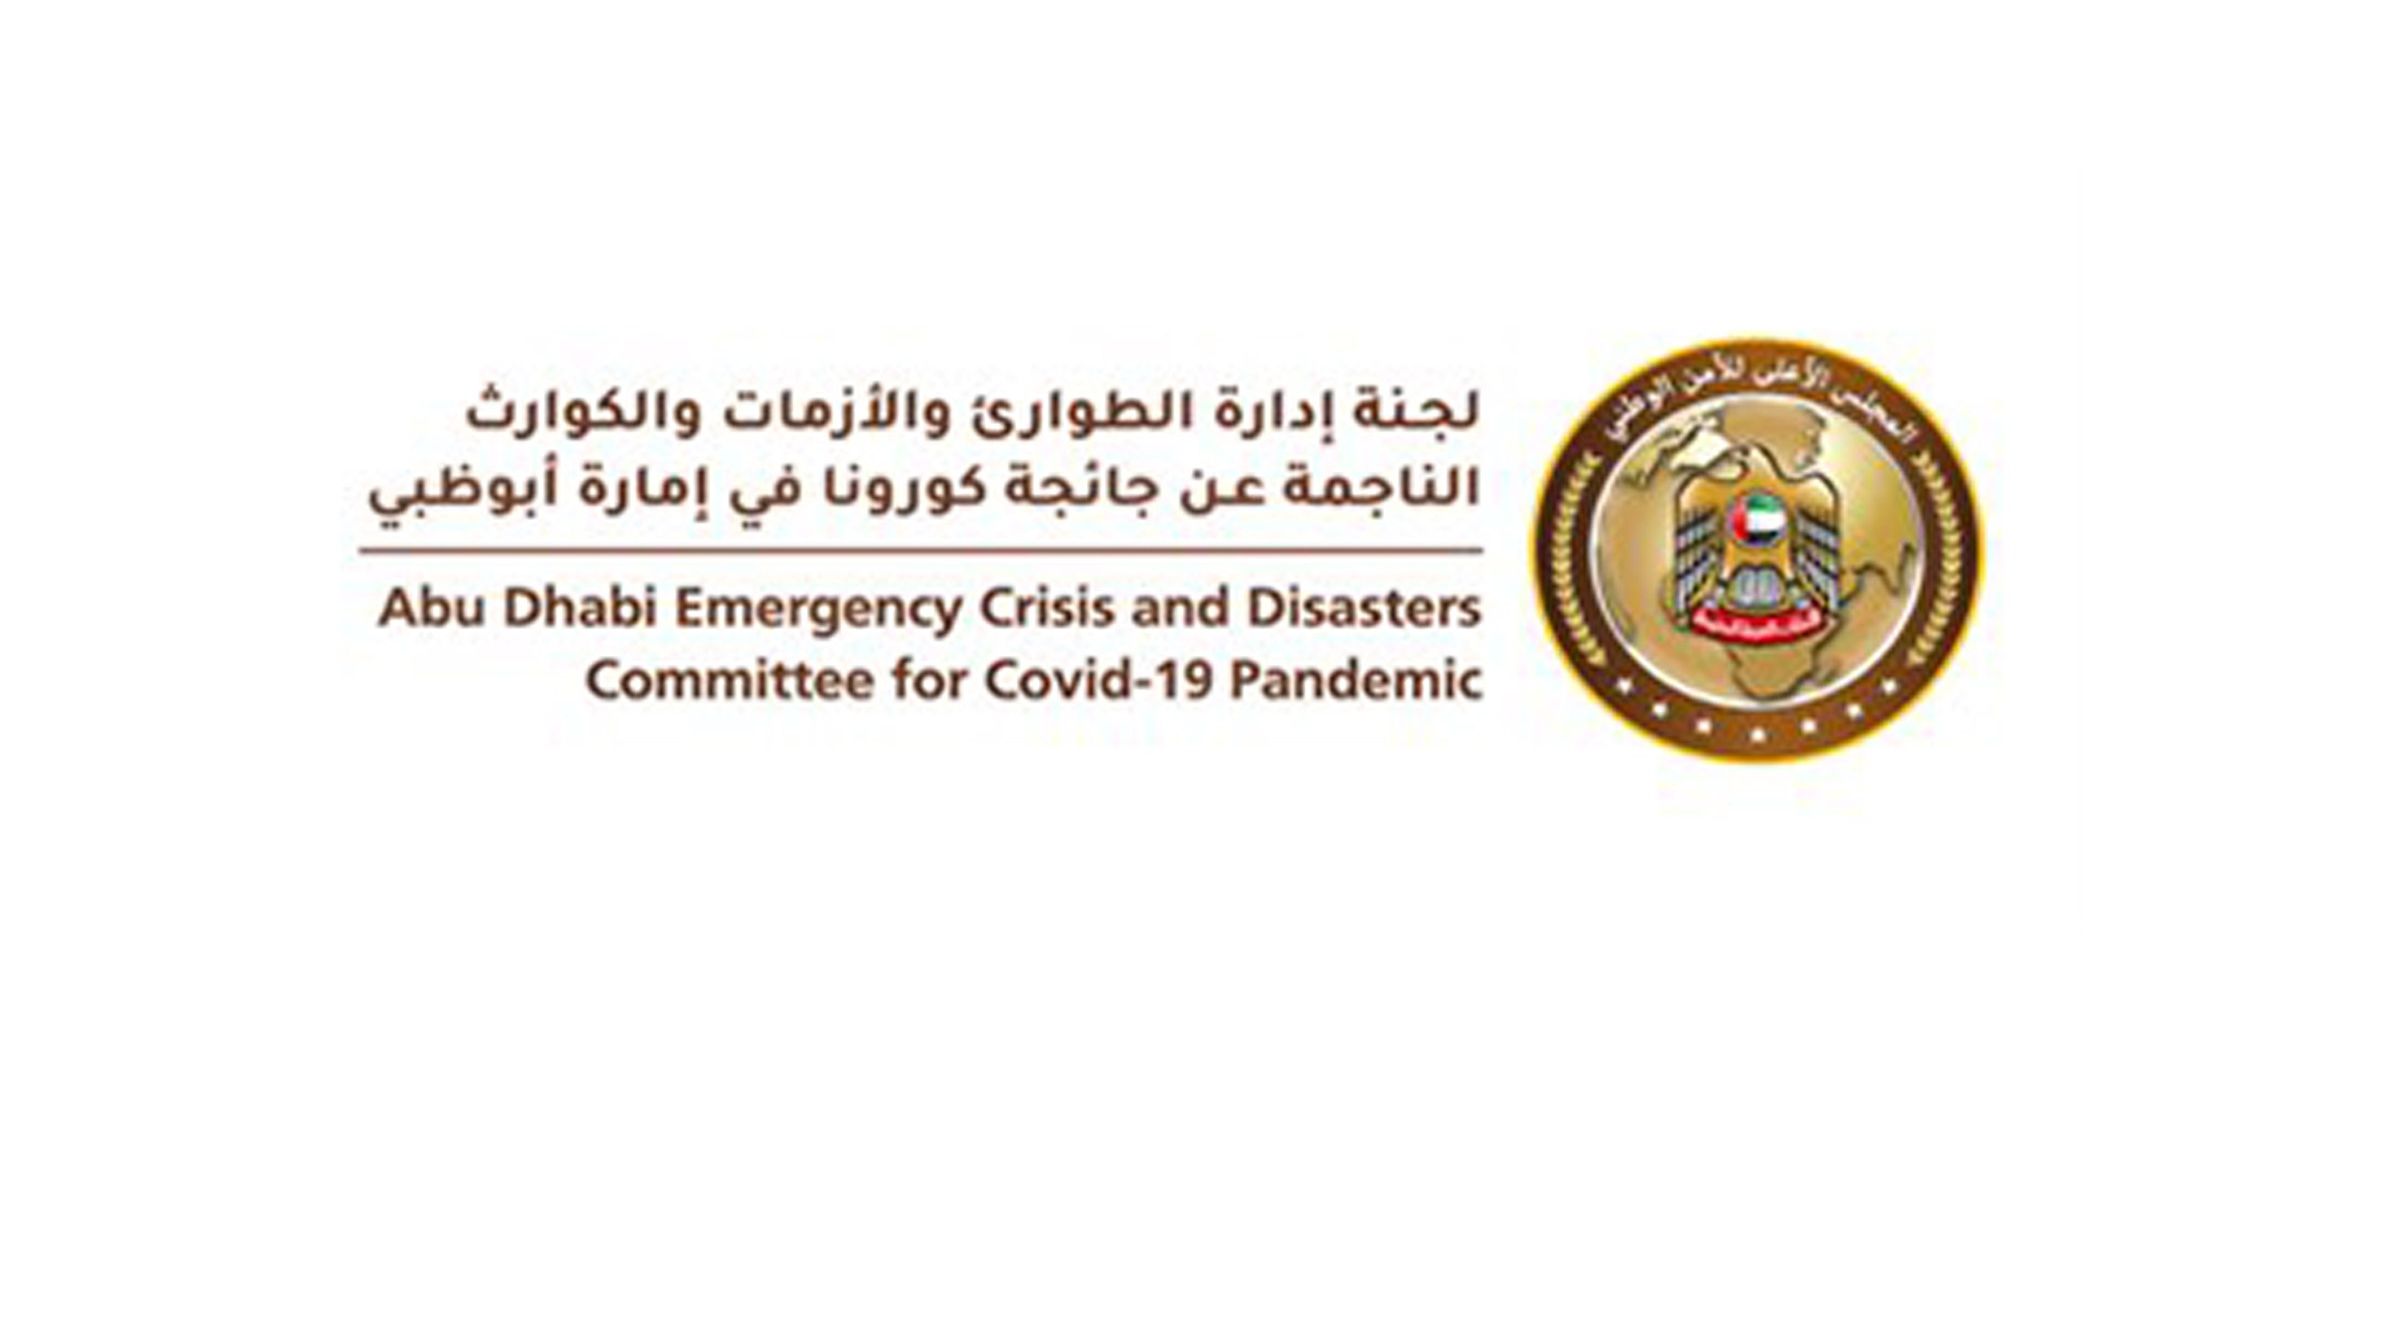 لجنة الطوارئ والأزمات والكوارث بأبوظبي تقلل الطاقة الاستيعابية والتشغيلية في جميع المجالات